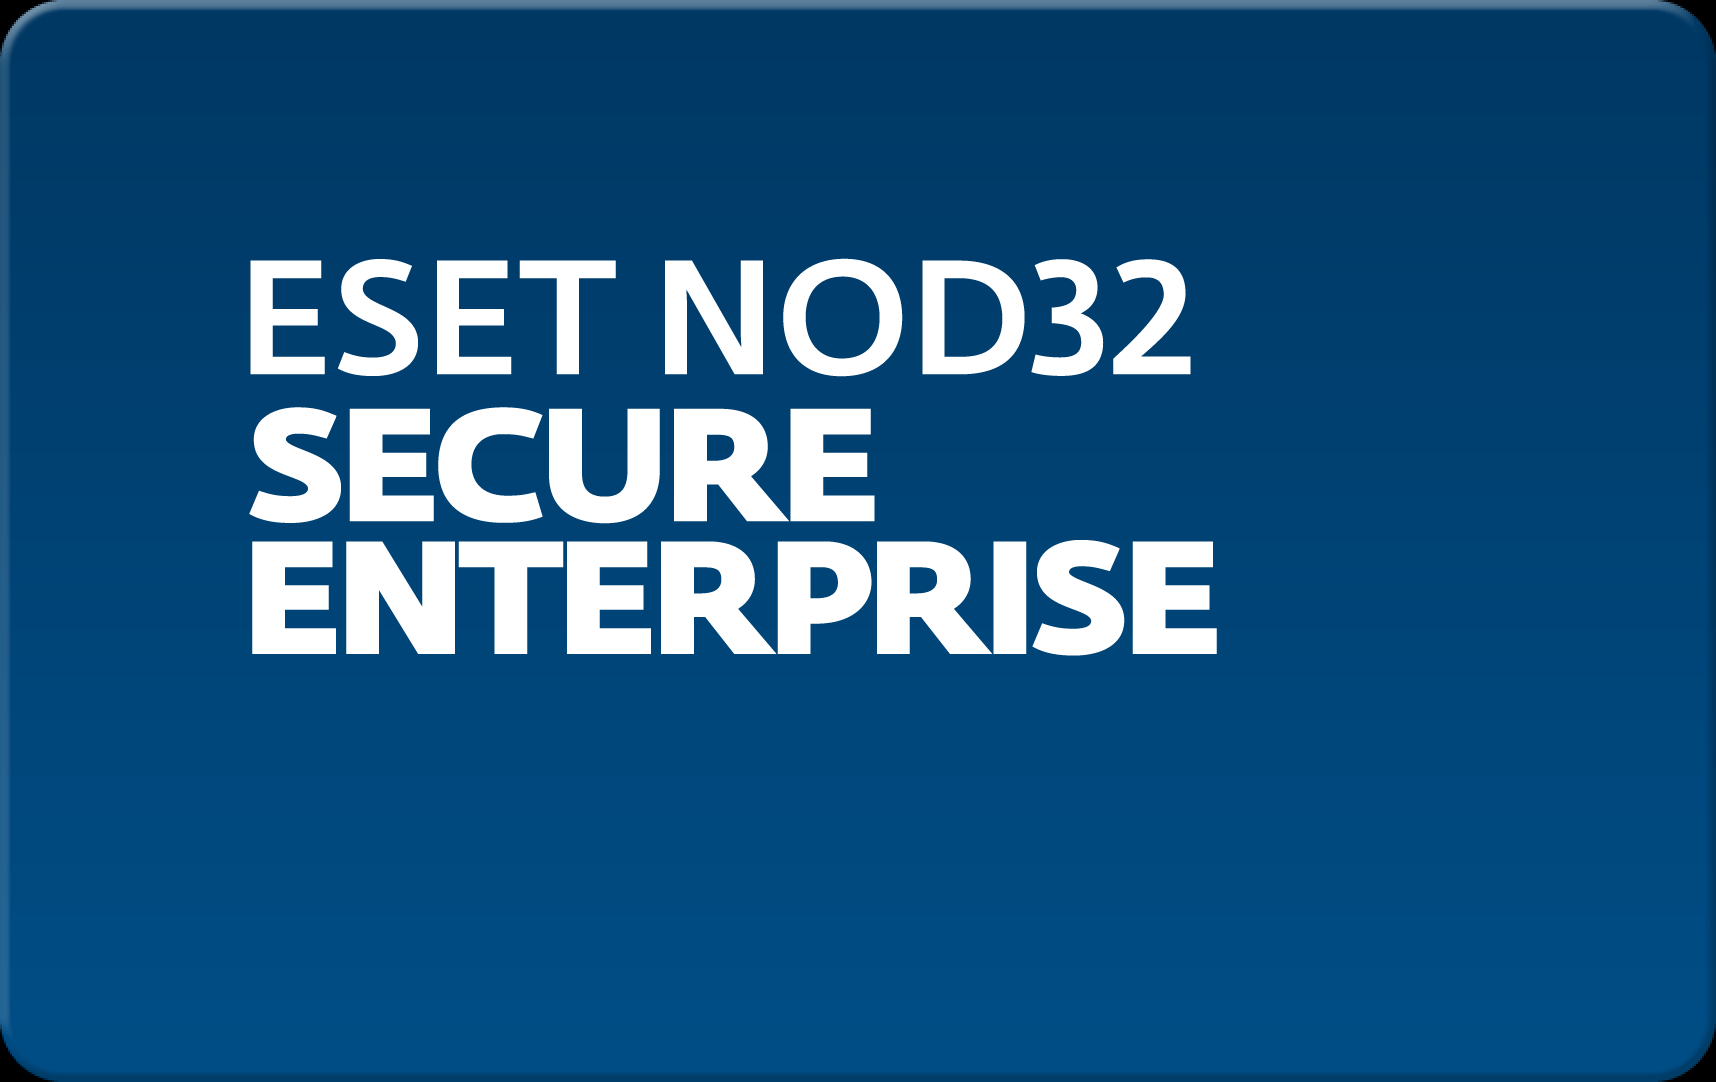        Eset NOD32 Secure Enterprise  151 